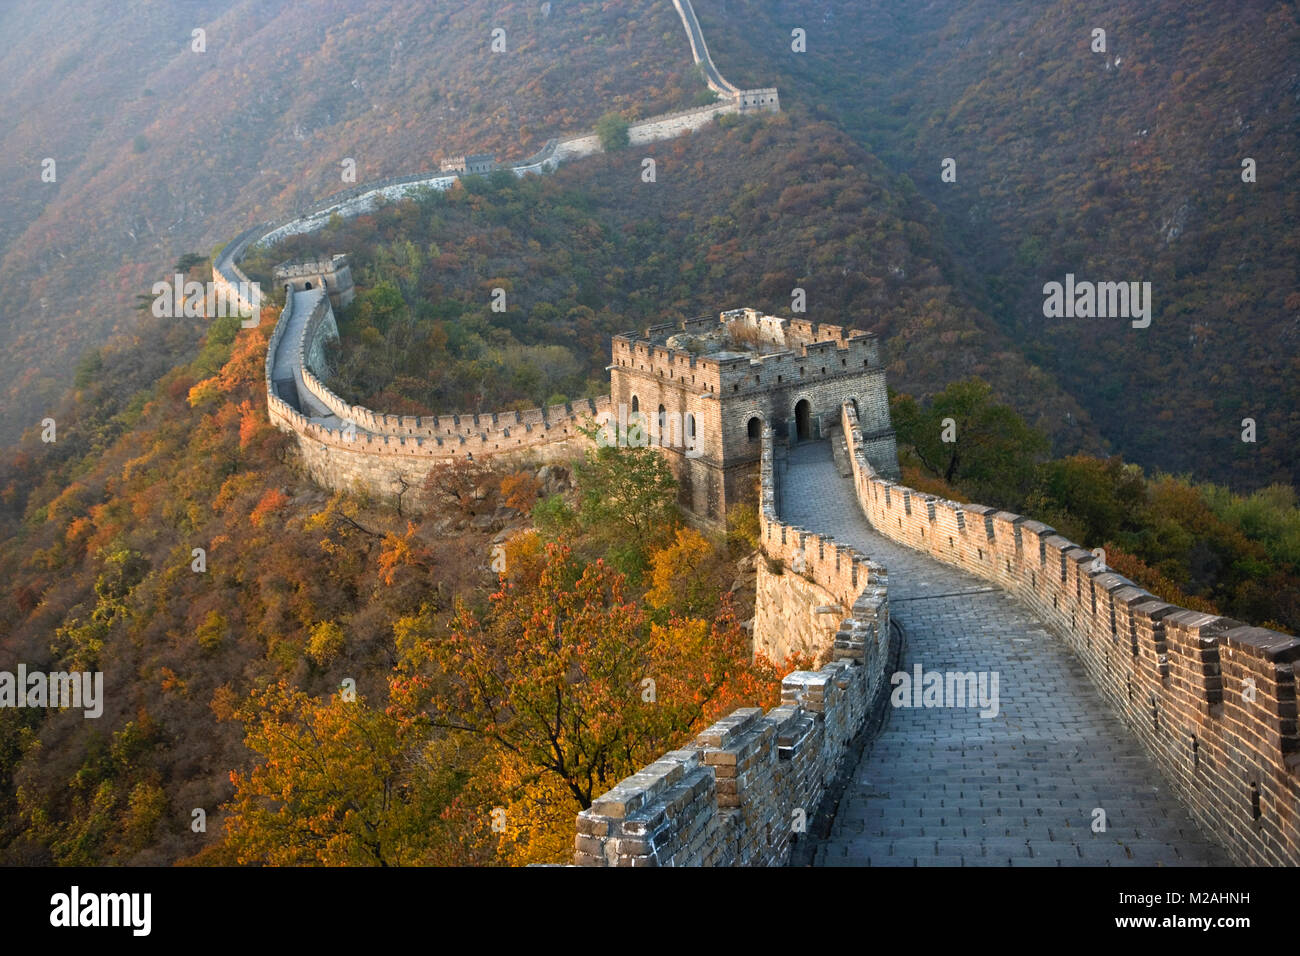 Cina. Mutianyu, nei pressi di Pechino. Il Grande Muro. UNESCO - Sito Patrimonio dell'umanità. Foto Stock